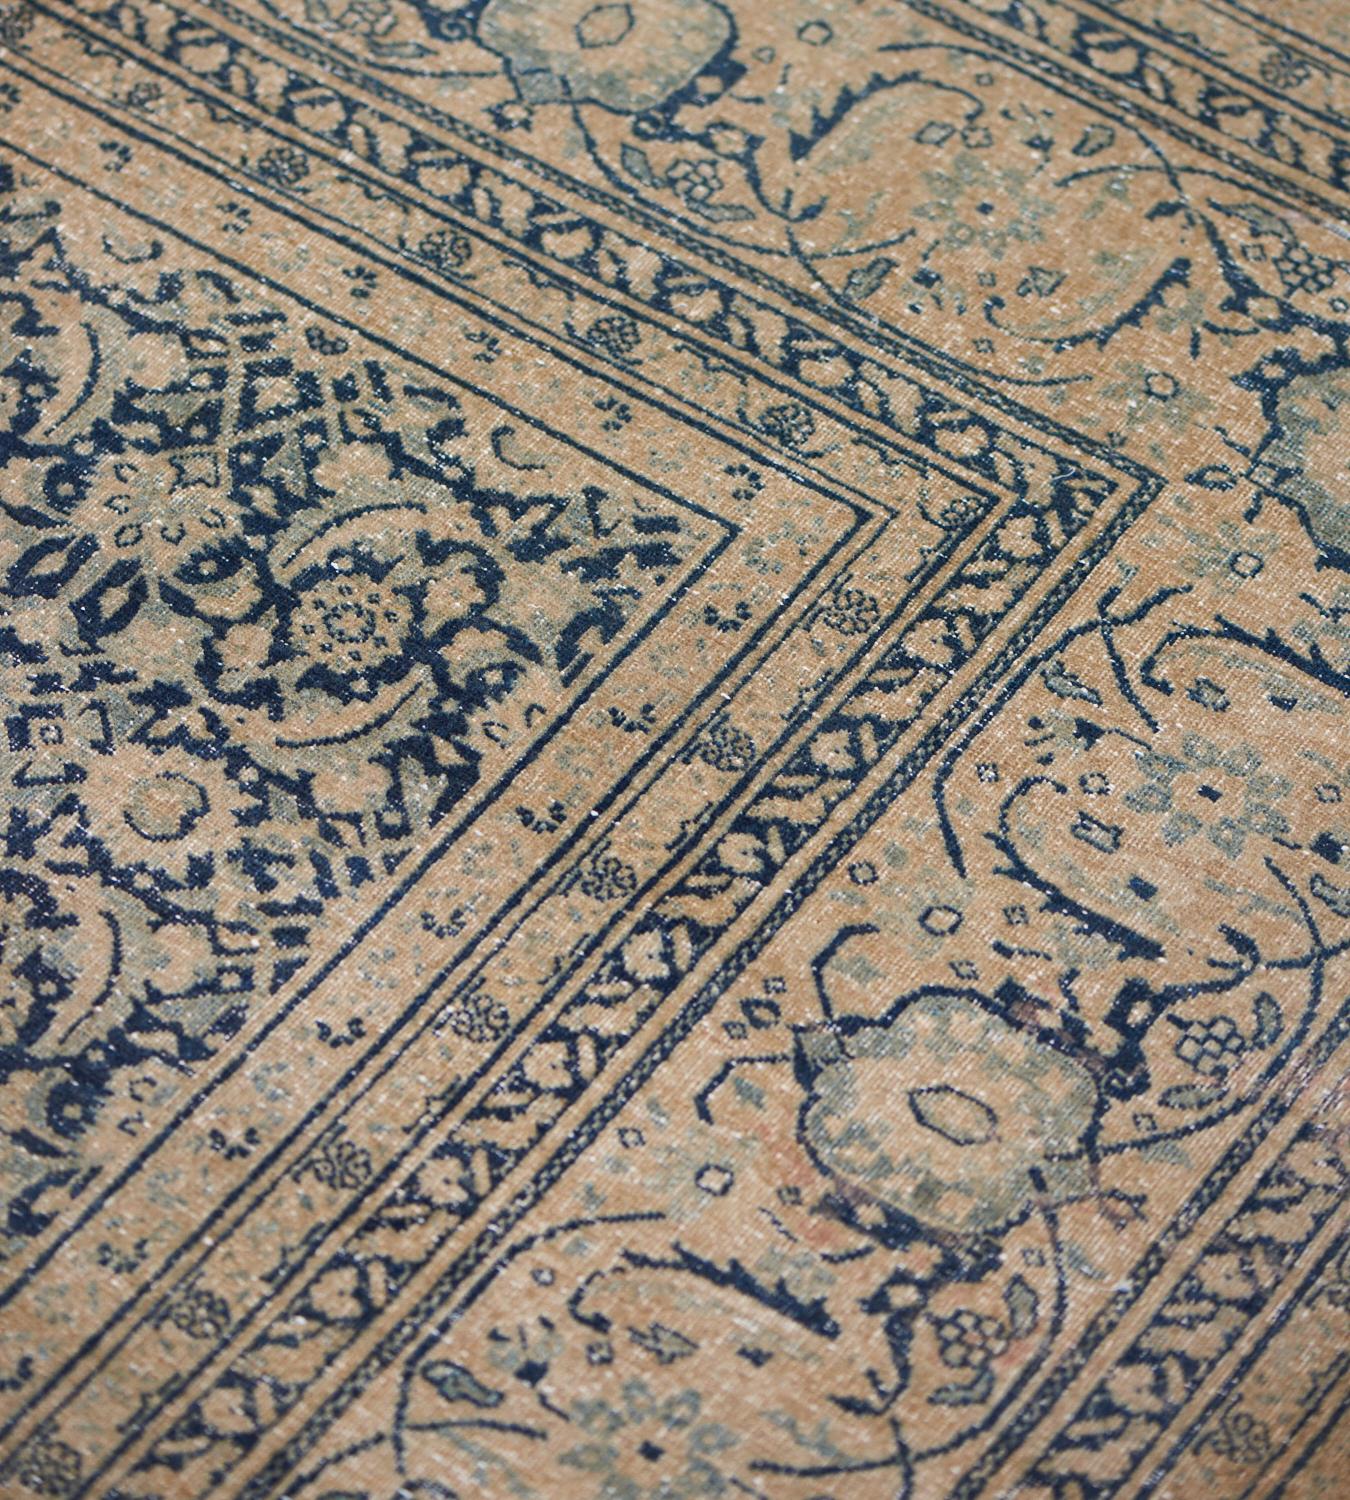 Cet ancien tapis persan Tabriz, datant de 1900, présente un champ bleu royal nuancé avec un motif herati brun chamois, dans une bordure de tortue-palmette et de vigne florale serpentant entre des bandes triples de vigne florale brun chamois et bleu